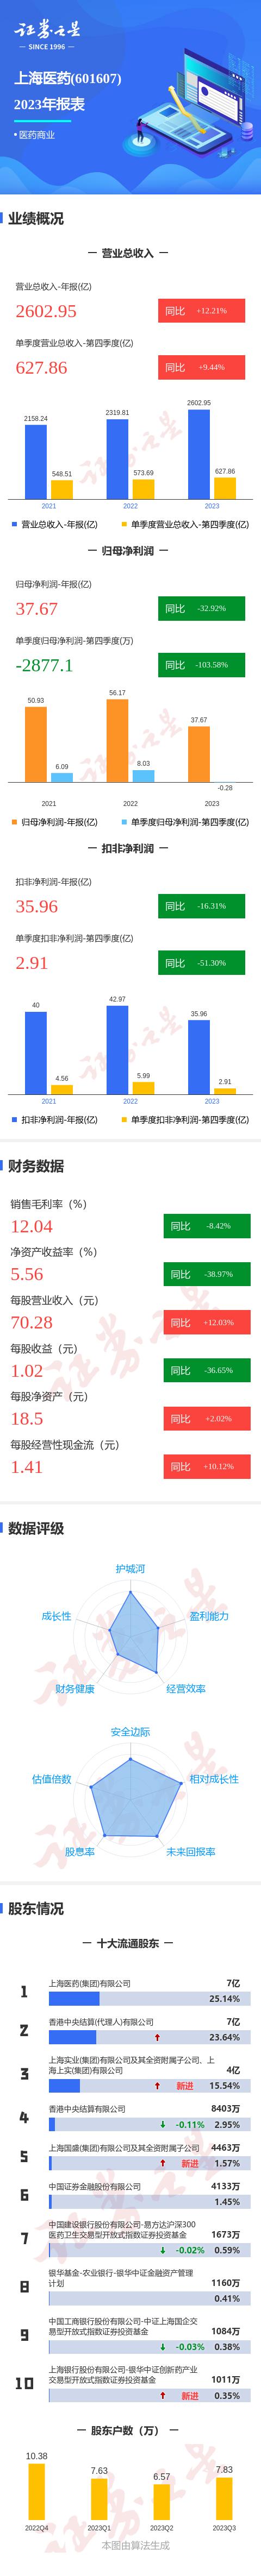 图解上海医药年报:第四季度单季净利润同比减10358%